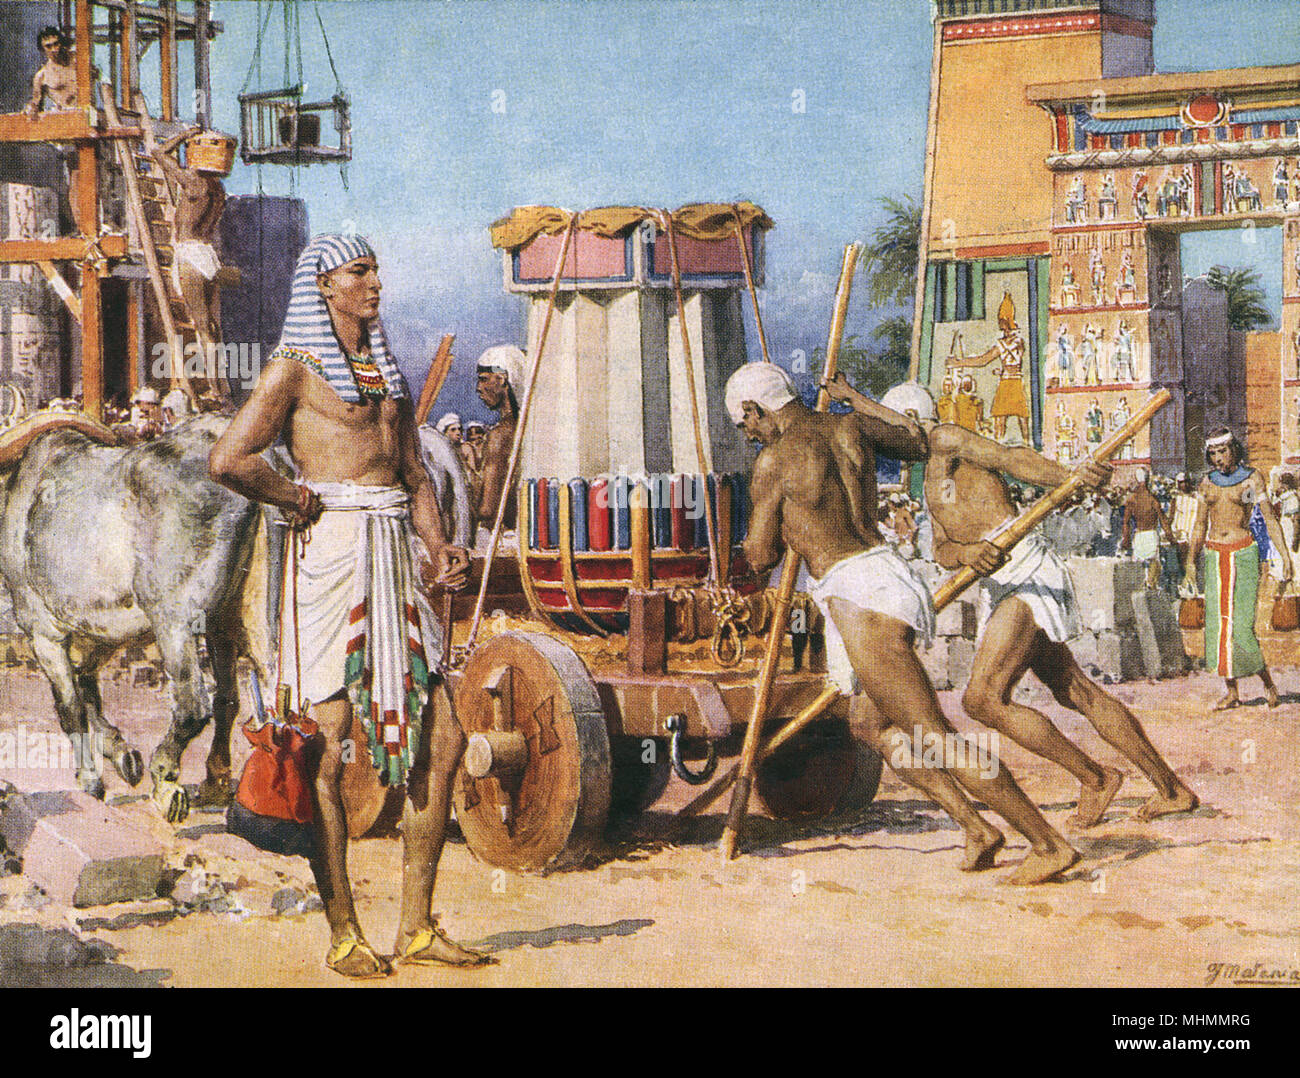 Les travailleurs qui construisent un temple ou le palais d'un pharaon dans l'Egypte ancienne. Date : Inconnue, poss. Années 1920 Banque D'Images